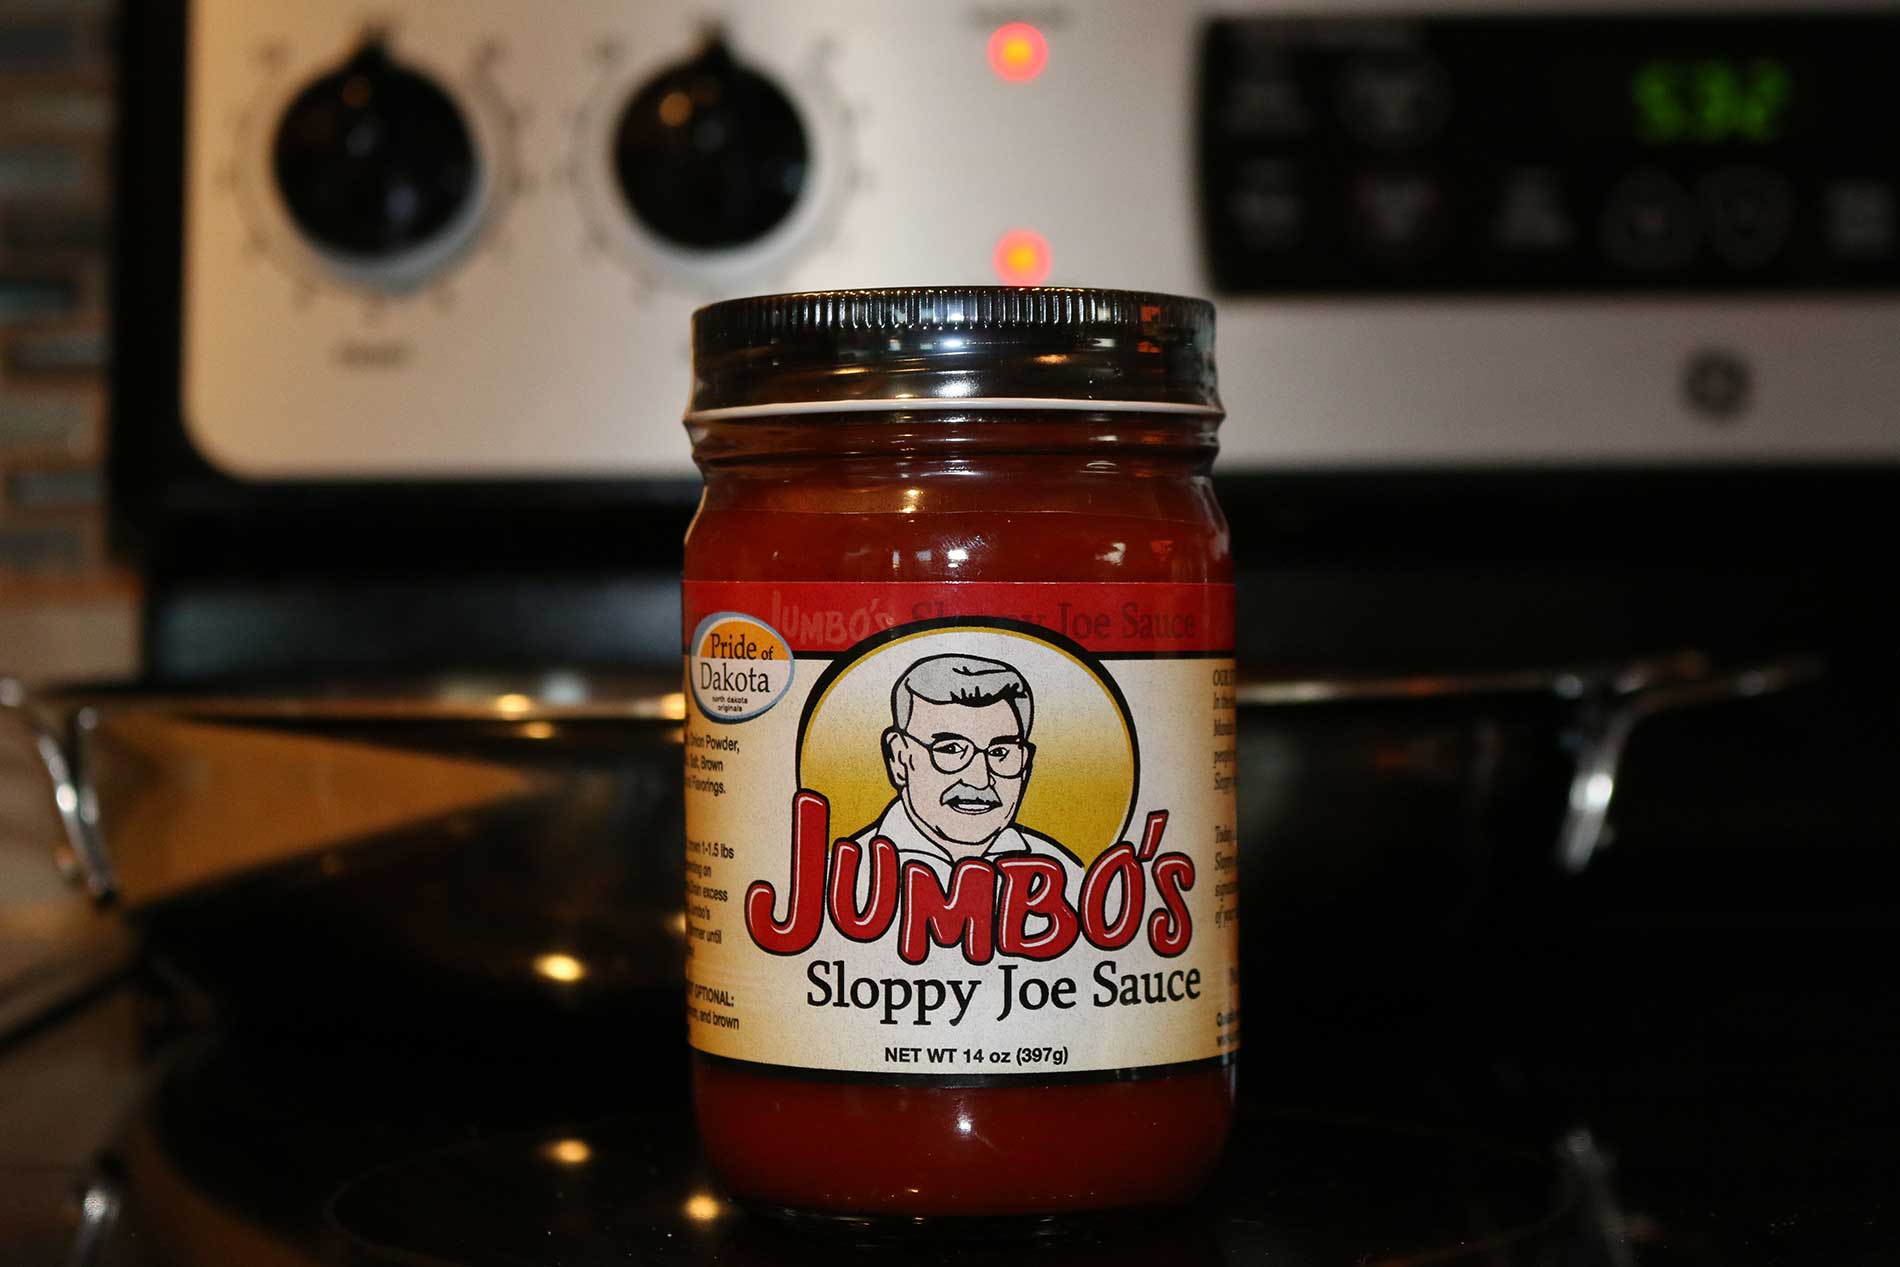 Jumbo's Sloppy Joe Sauce